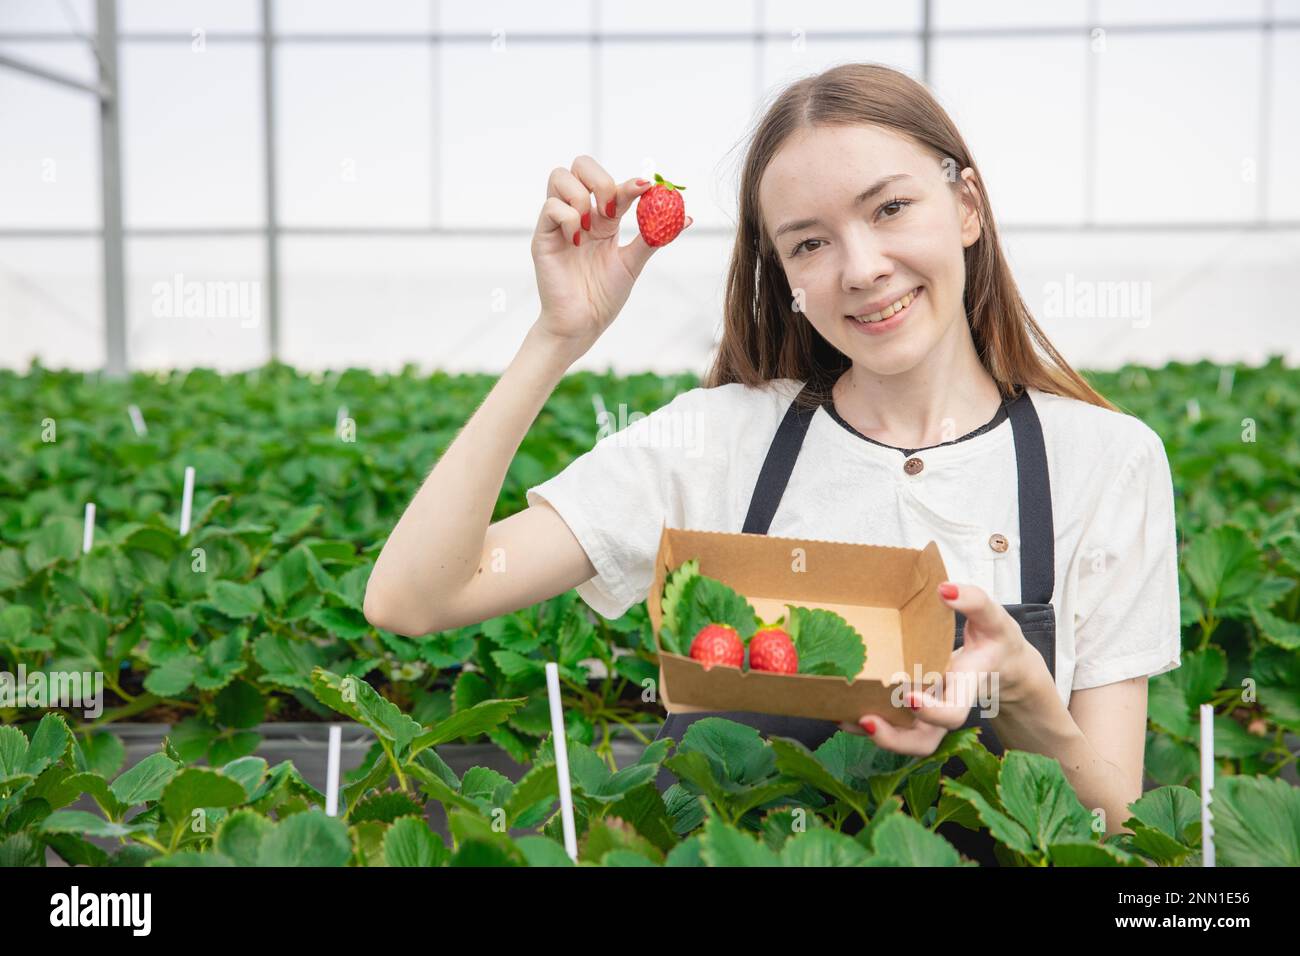 Junge Farmerin zeigt große rote, frische, süße Erdbeerfrüchte von einer Bio-Farm im grünen Haus Stockfoto